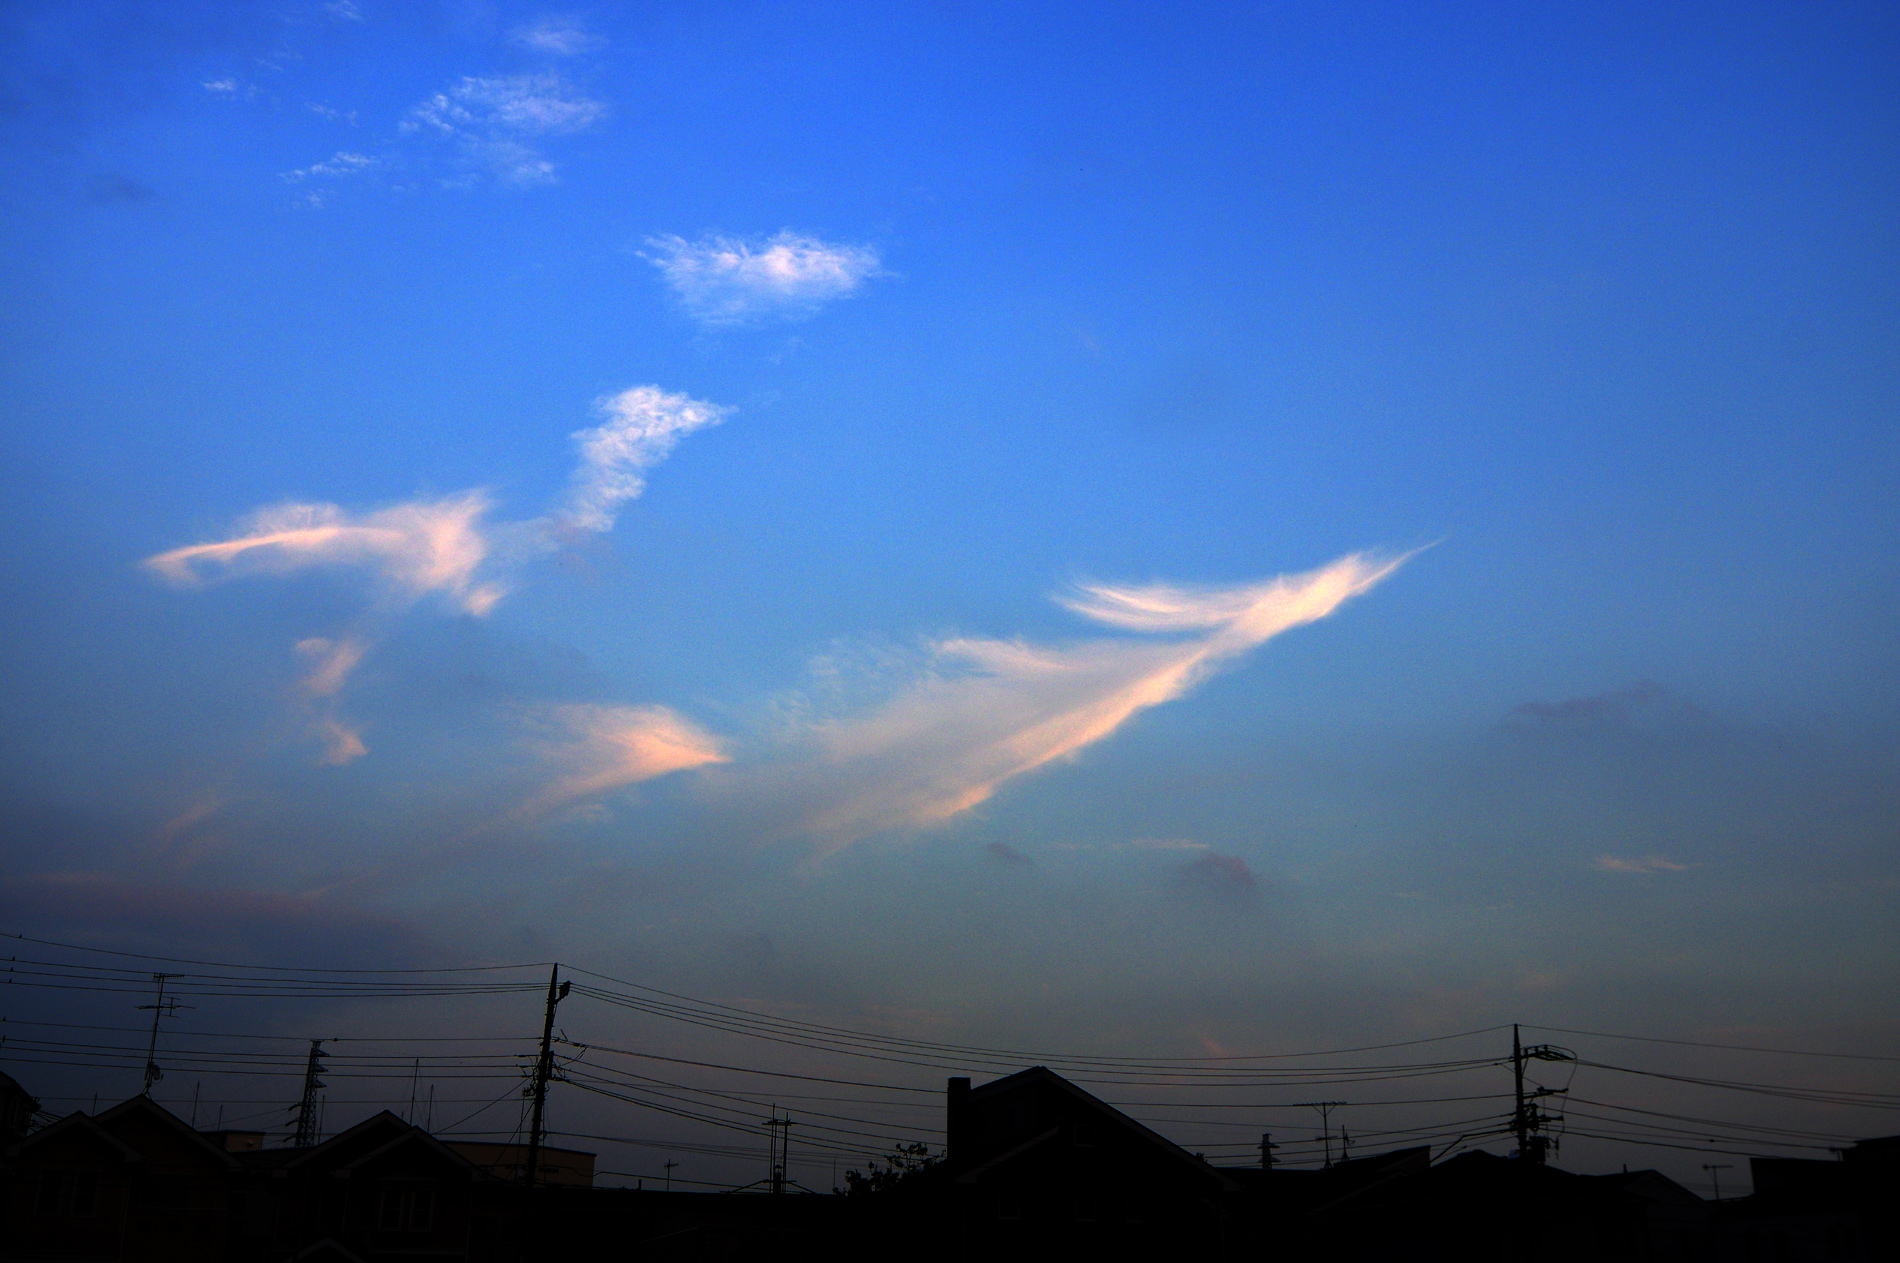 この雲、二羽の鳳凰に見えませんか？| | 鳴神響一のサイト「銀河鉄道 